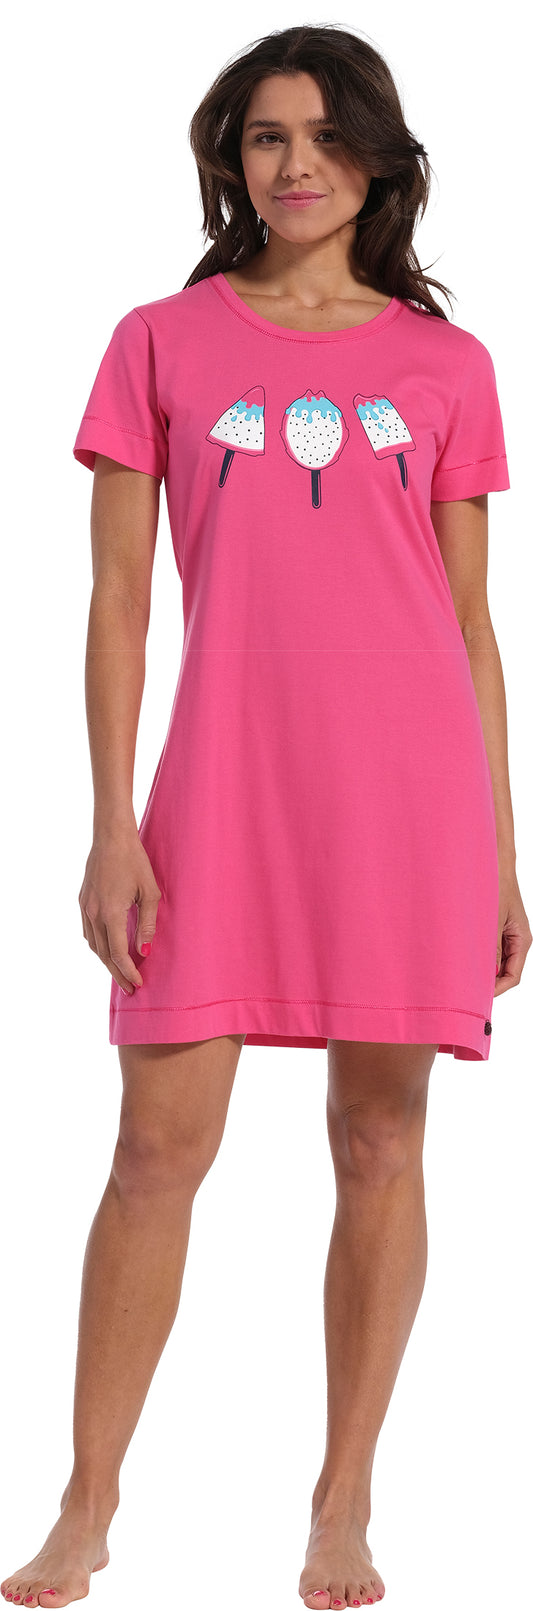 Nightdress 90cm 11231-406-2 216 pink